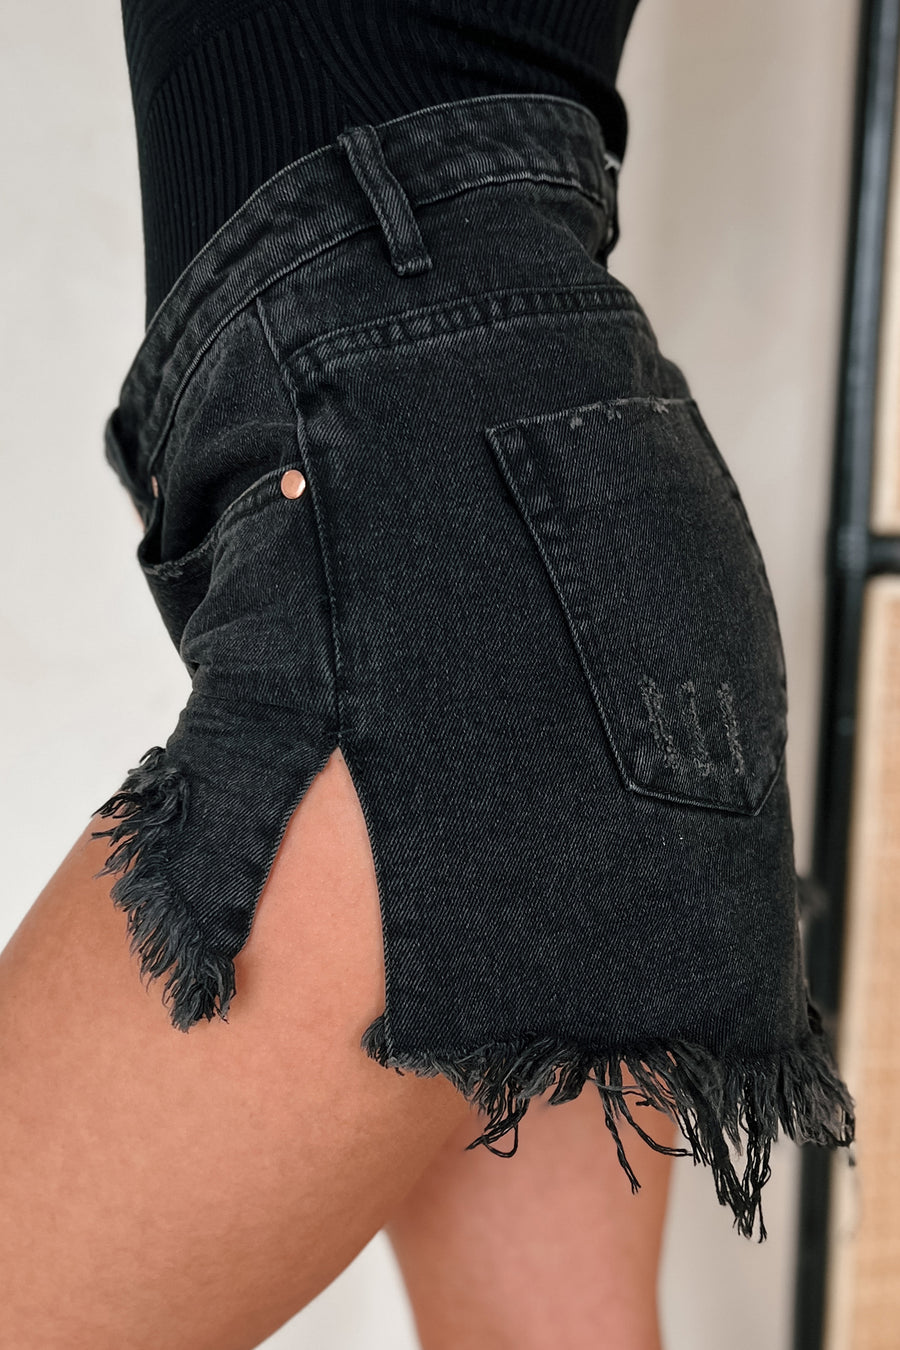 Blaise Mid Rise Destroyed Denim Shorts (Washed Black) - NanaMacs